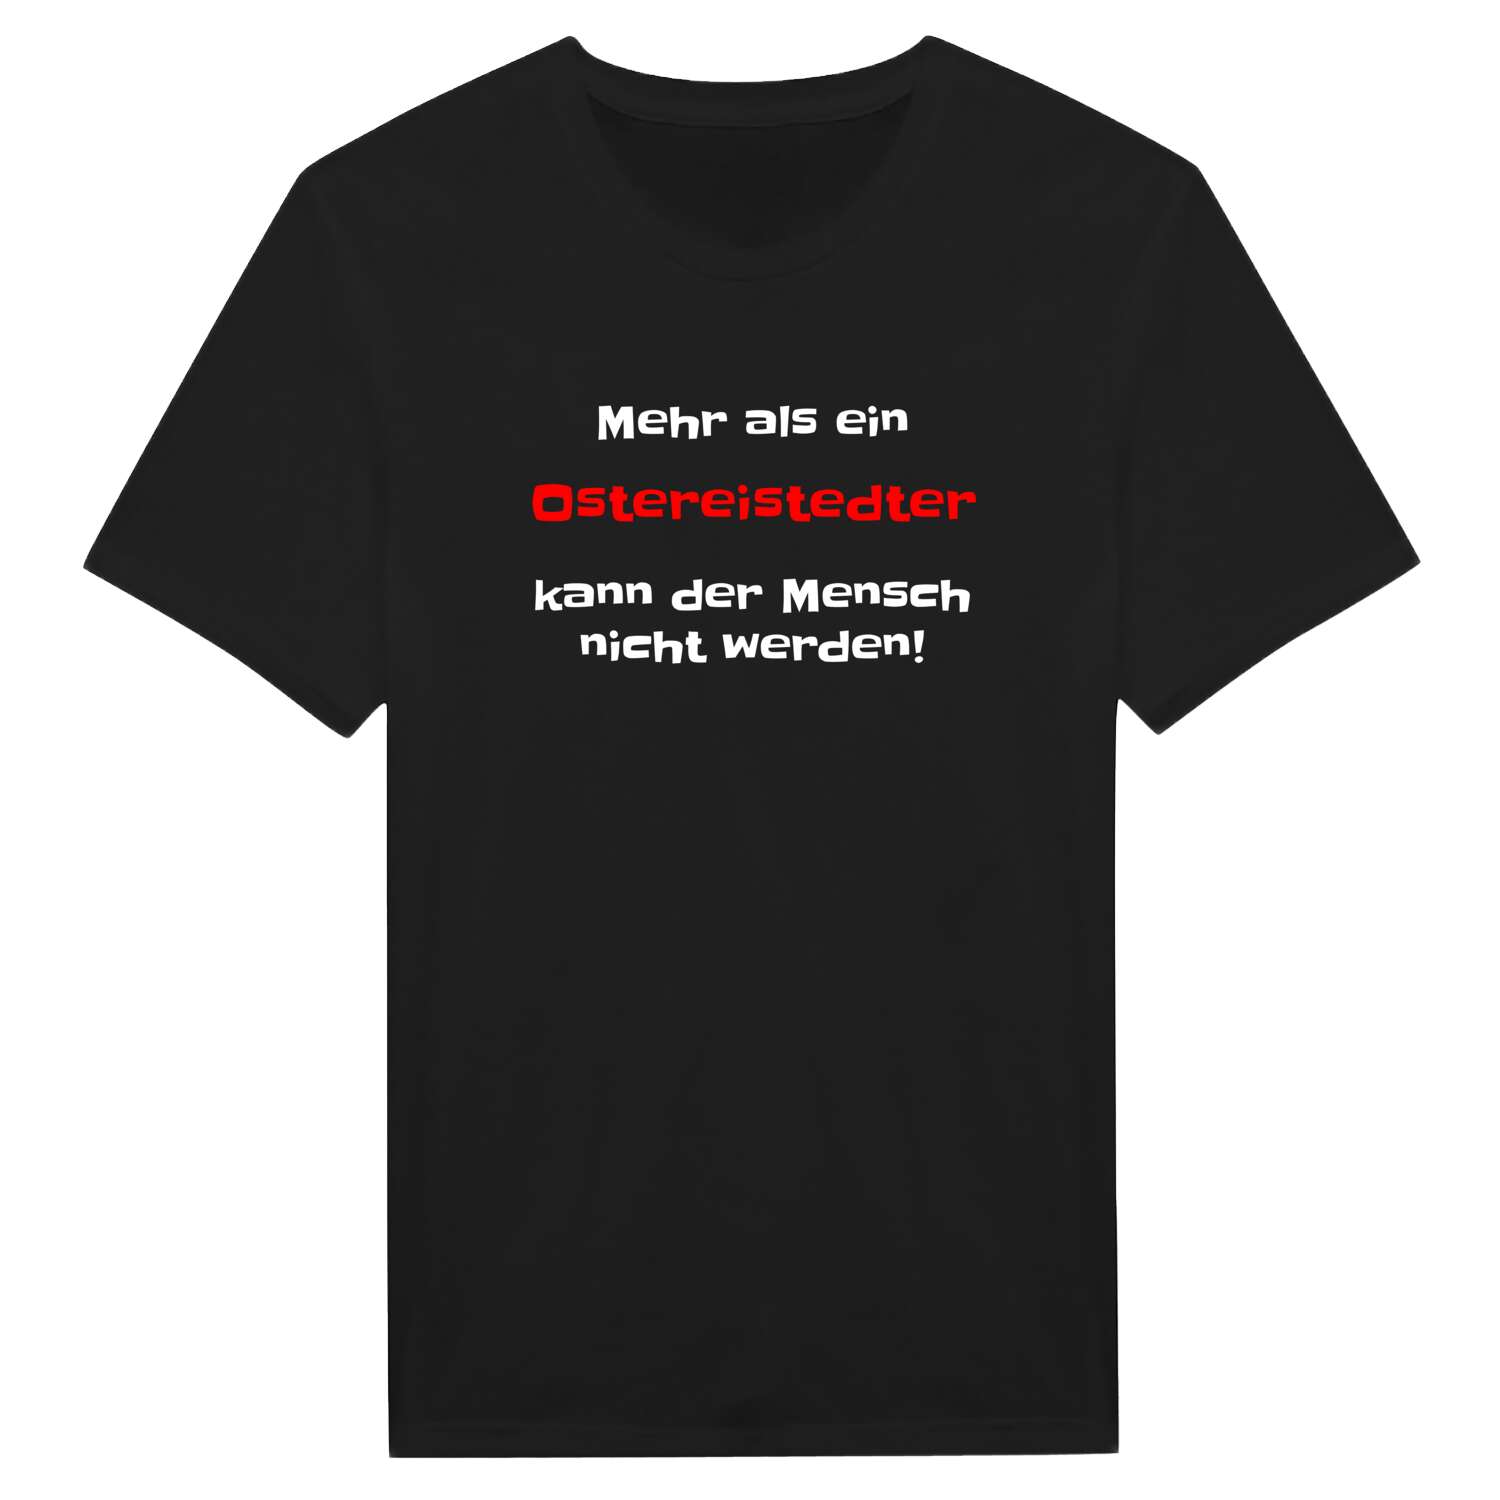 Ostereistedt T-Shirt »Mehr als ein«